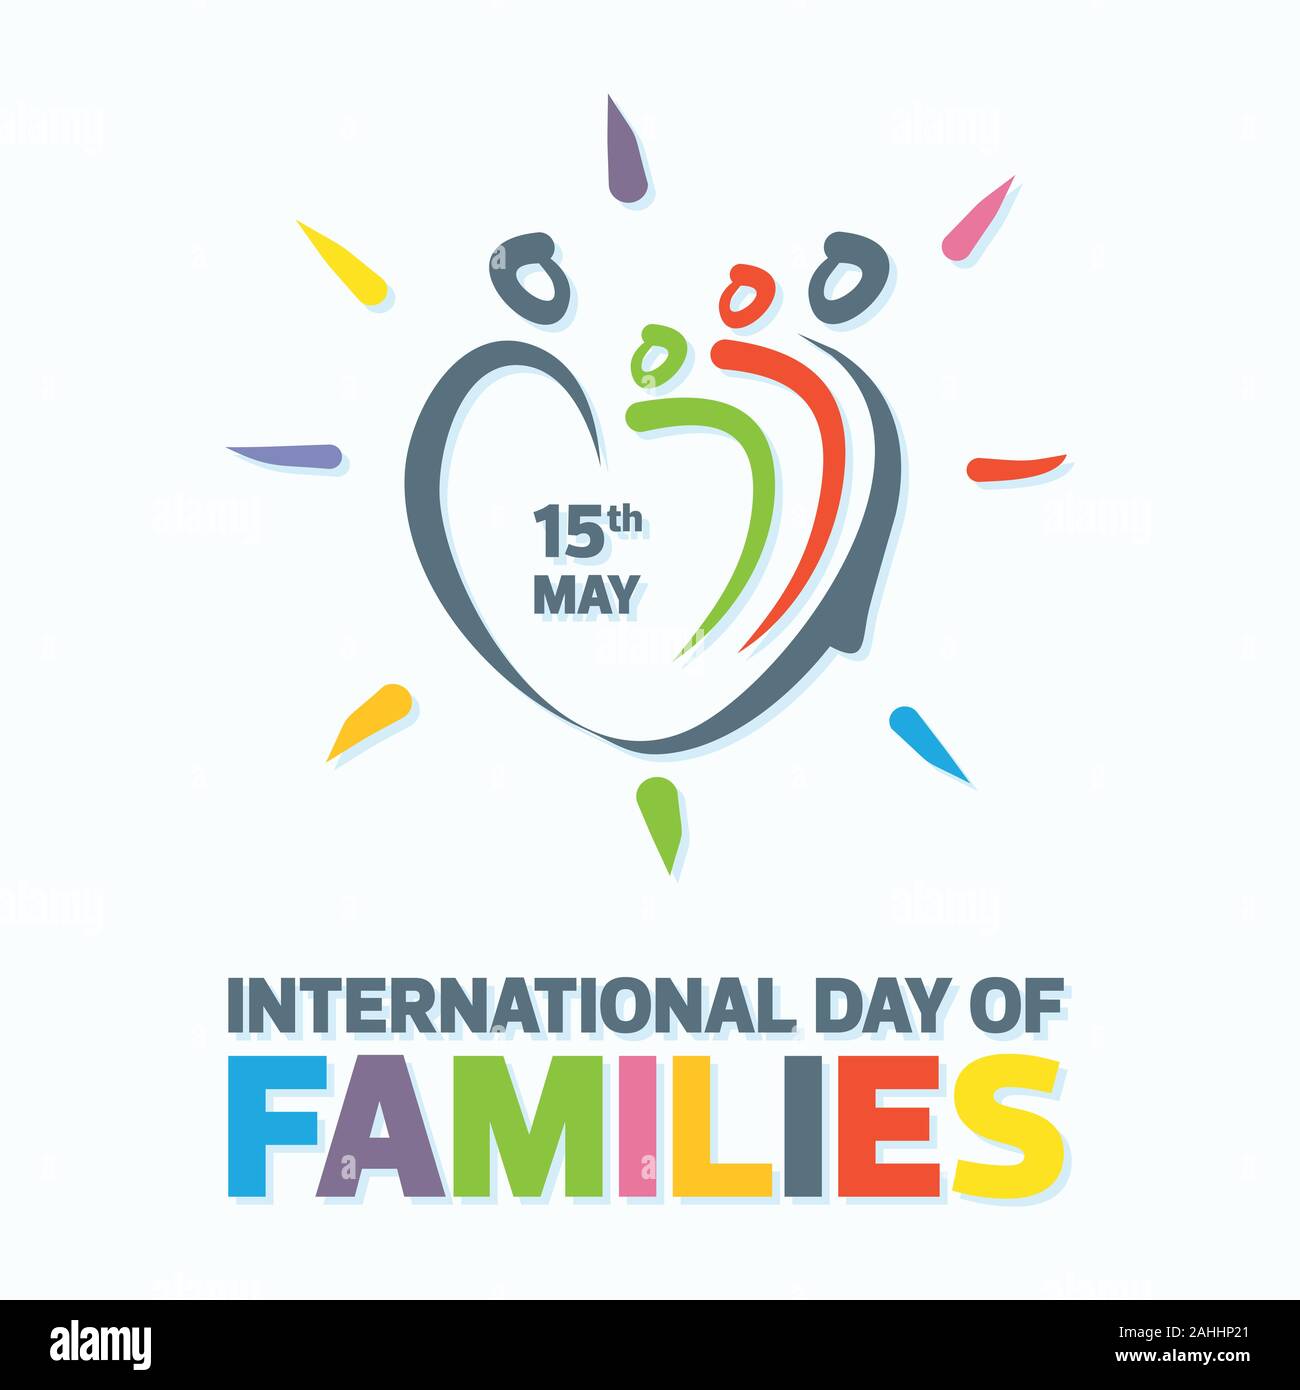 Buntes Wort des internationalen Familientags mit abstrakten Menschen prägen die Liebe. Design Brief Internationaler Tag der Familien für Element-Design. Stock Vektor